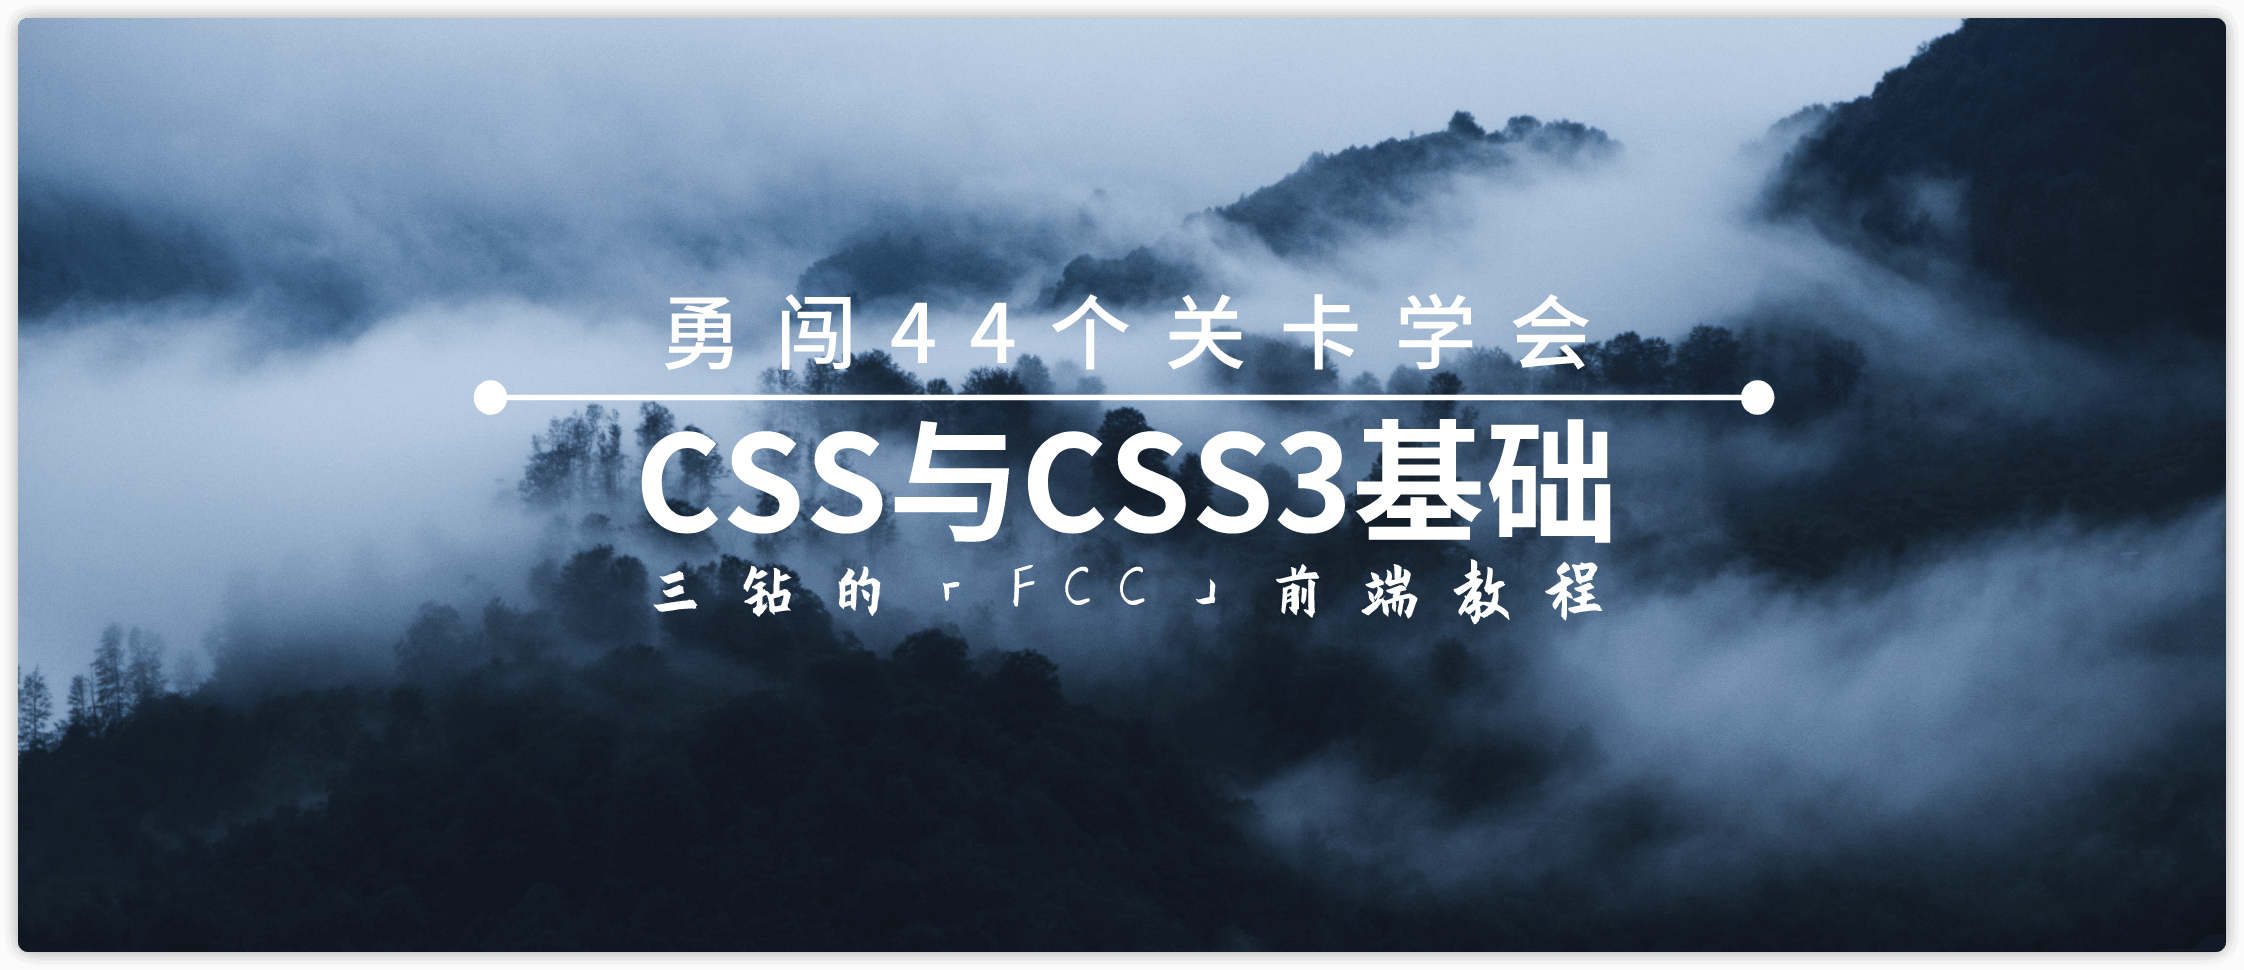 44关学习CSS与CSS3基础「二」